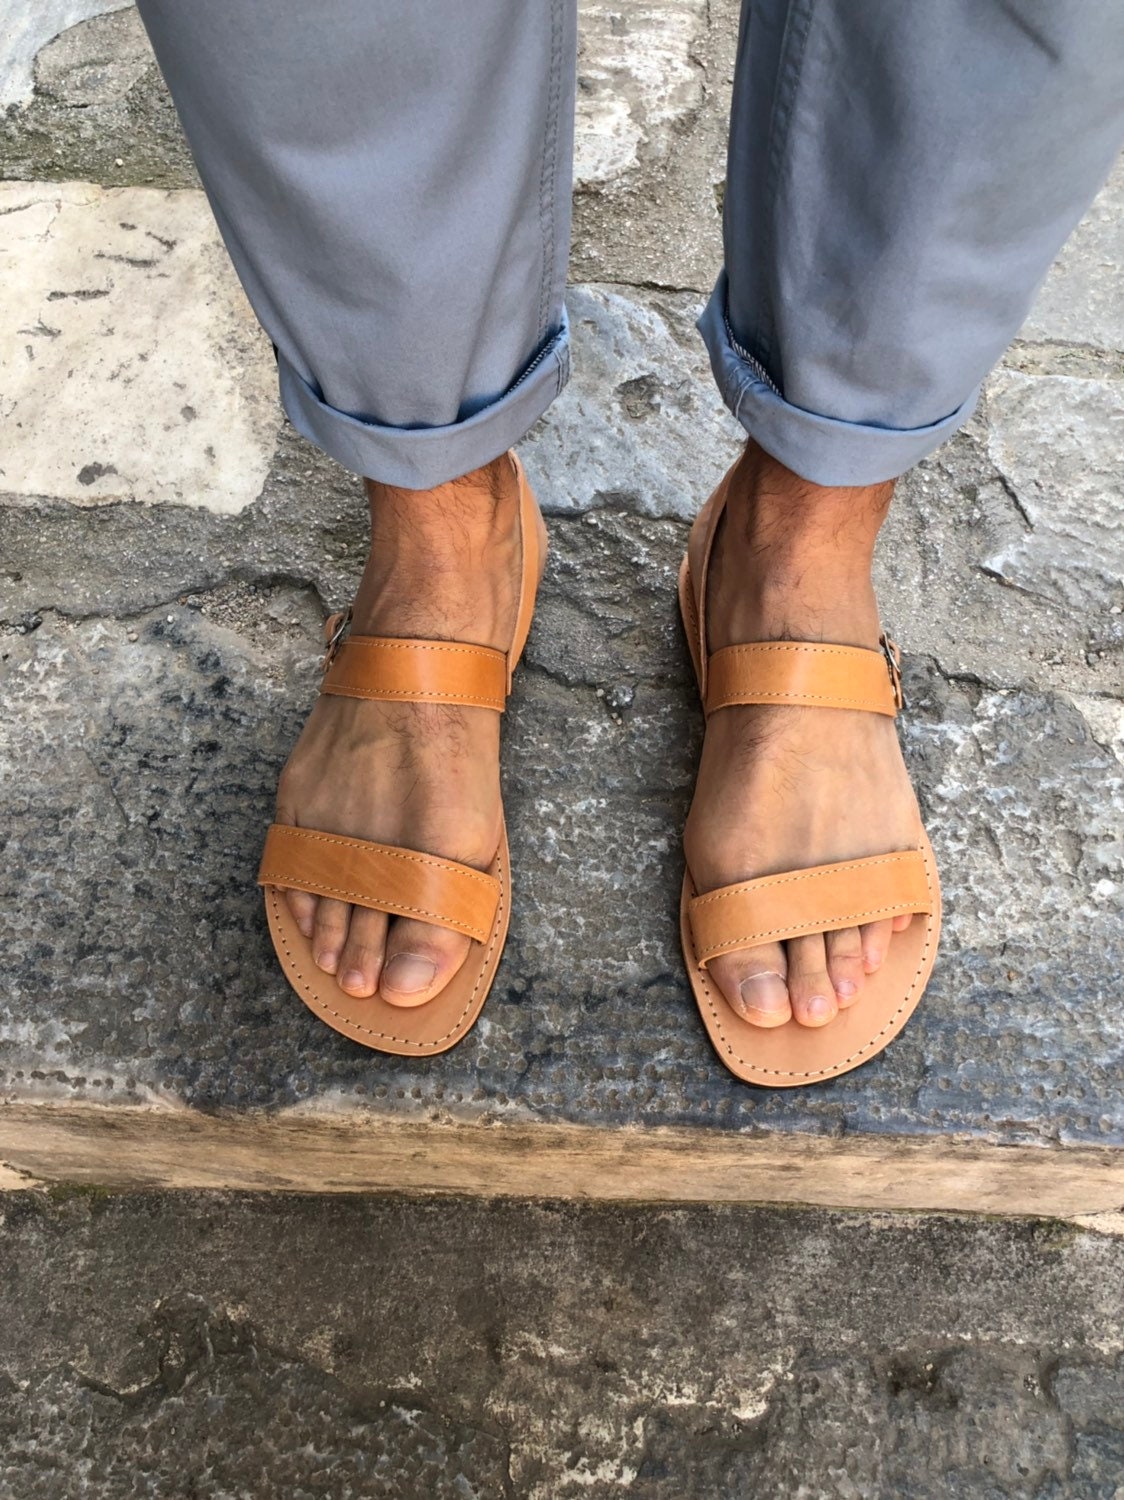 Greek Sandals Men Leather Sandals Mens Sandals Brown | Etsy